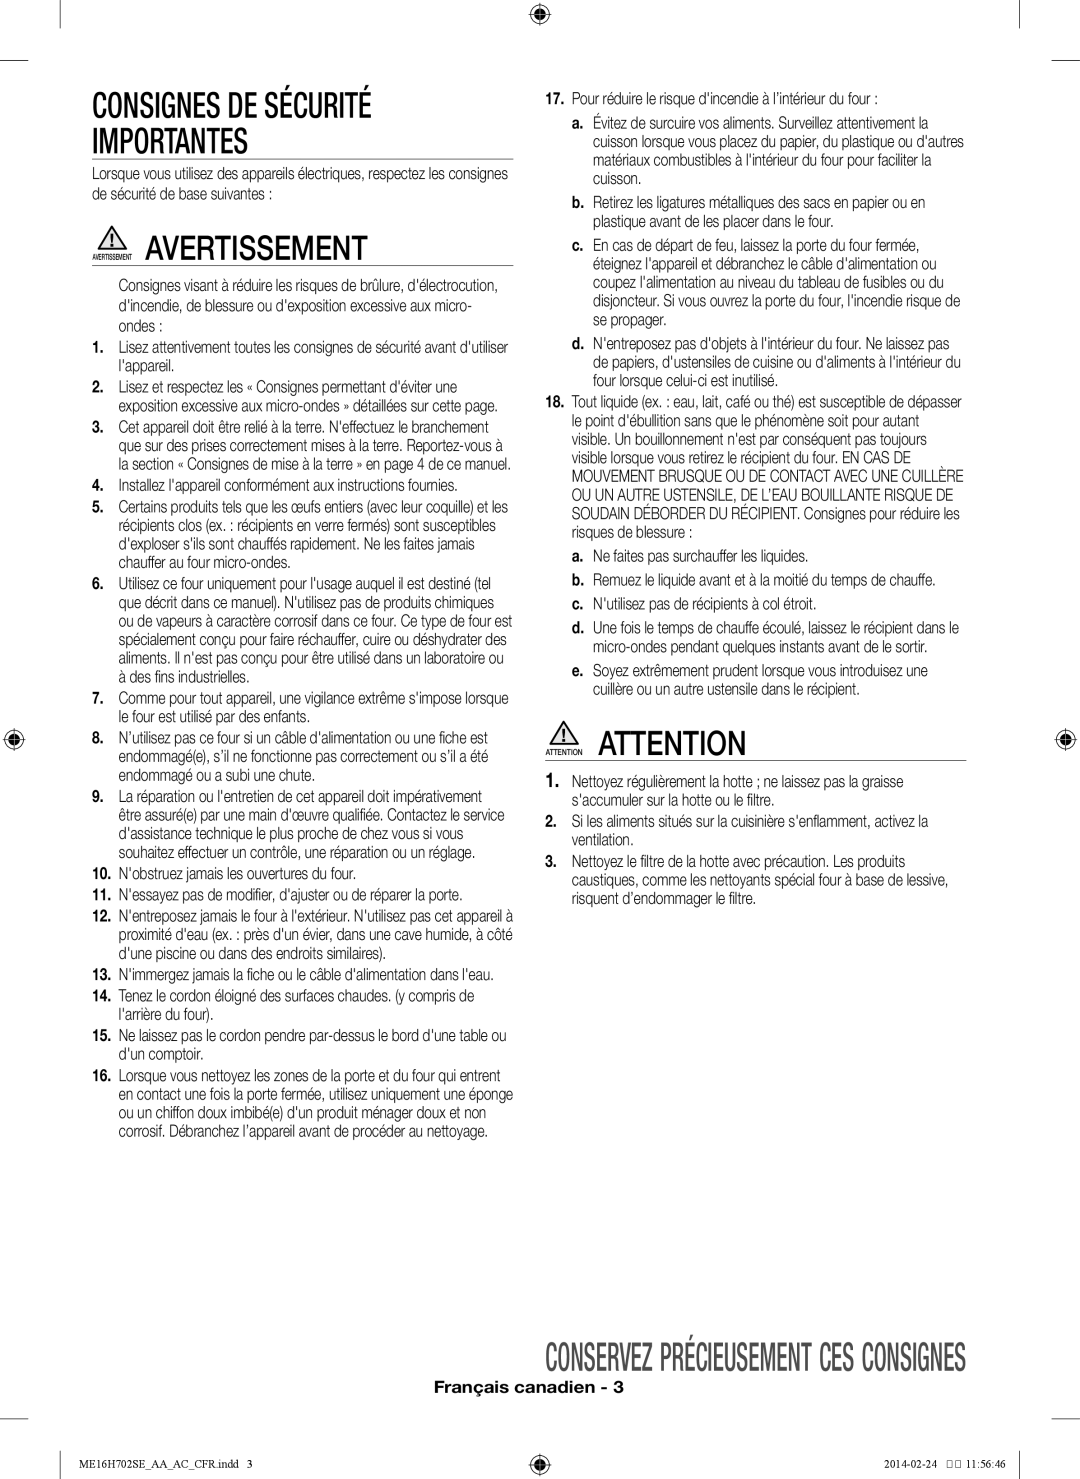 Samsung ME16H702SE user manual Importantes, Consignes De Sécurité, Conservez précieusement ces consignes, Français canadien 